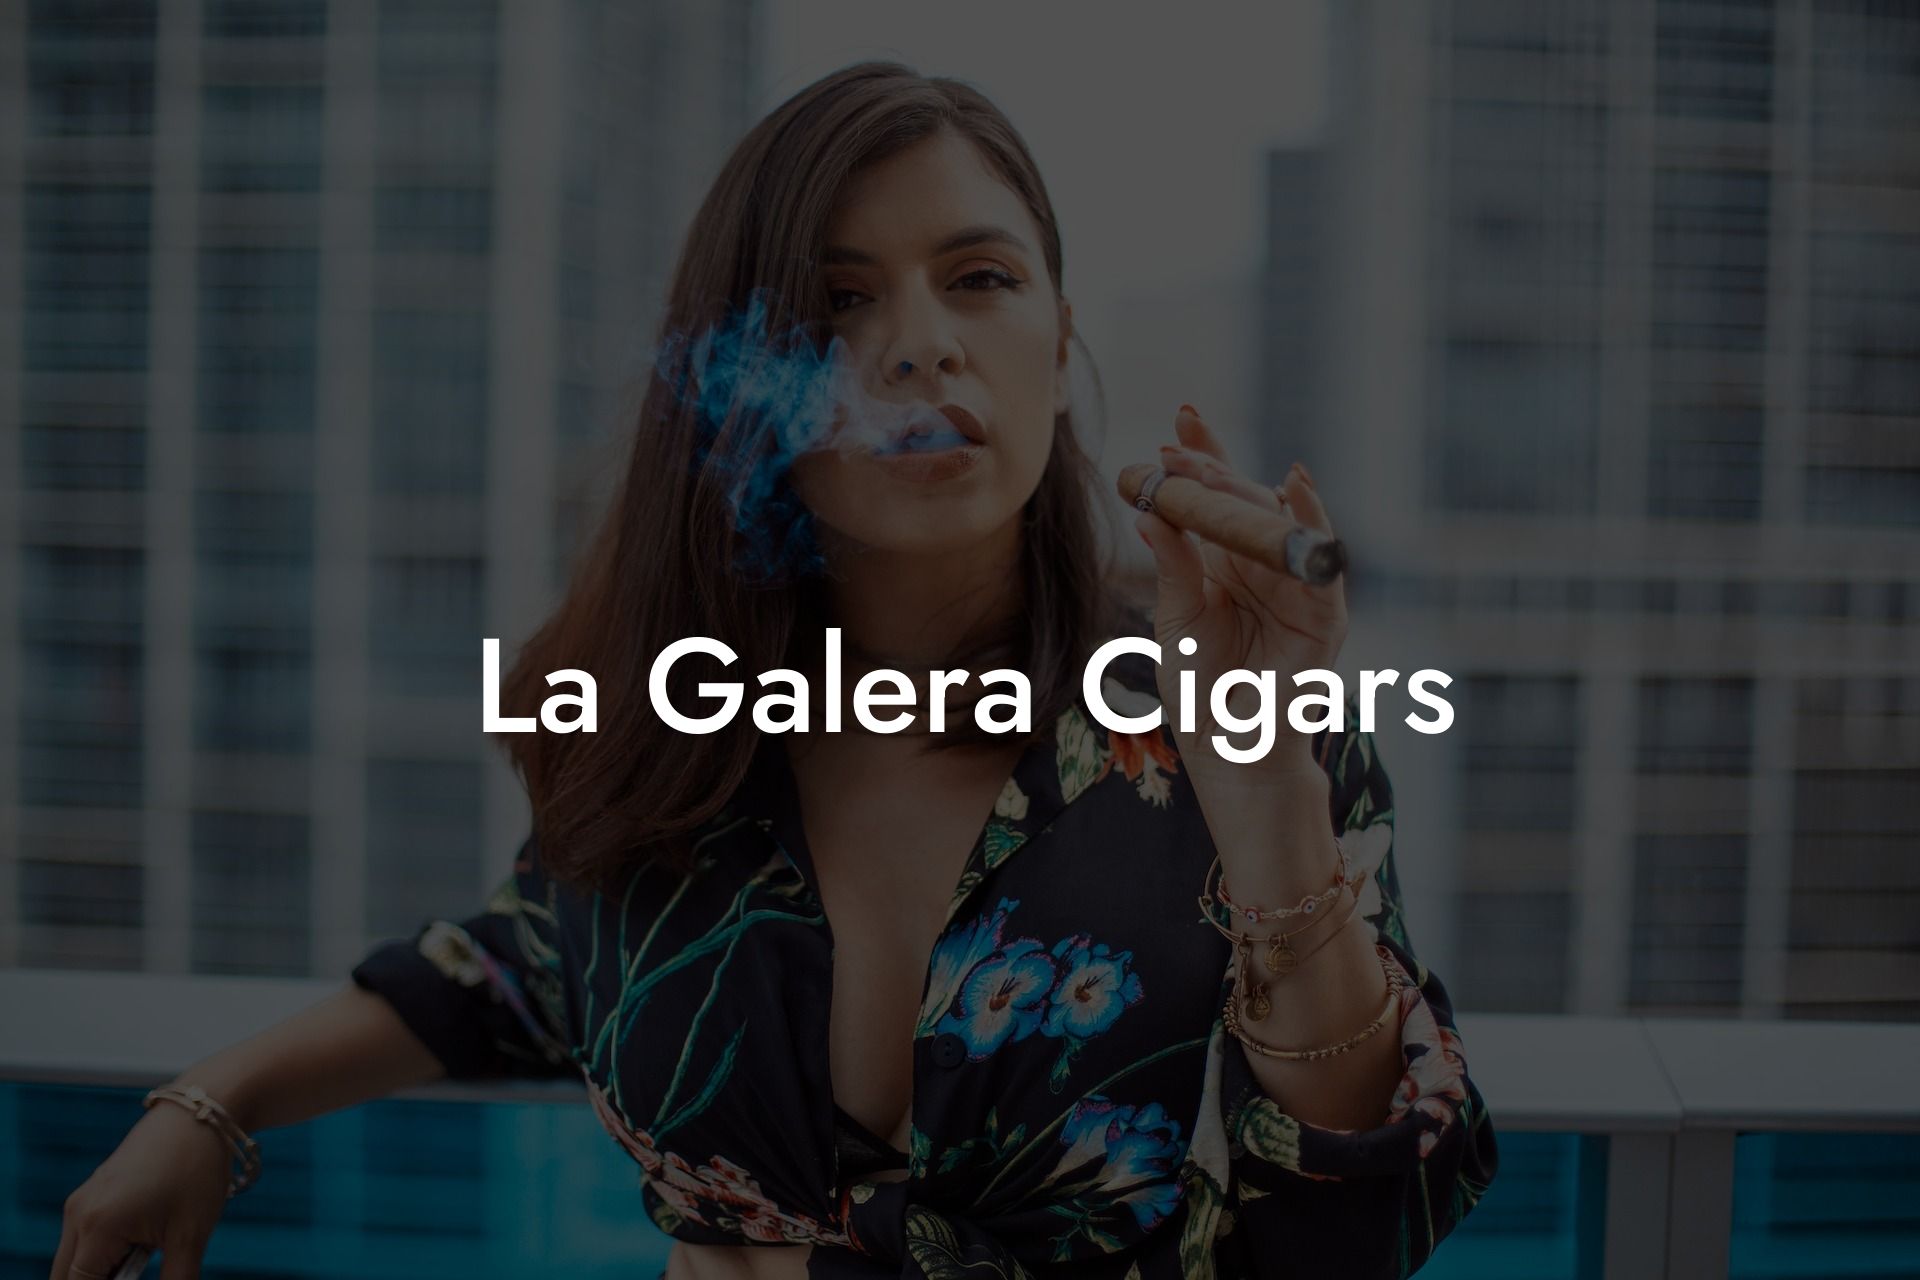 La Galera Cigars